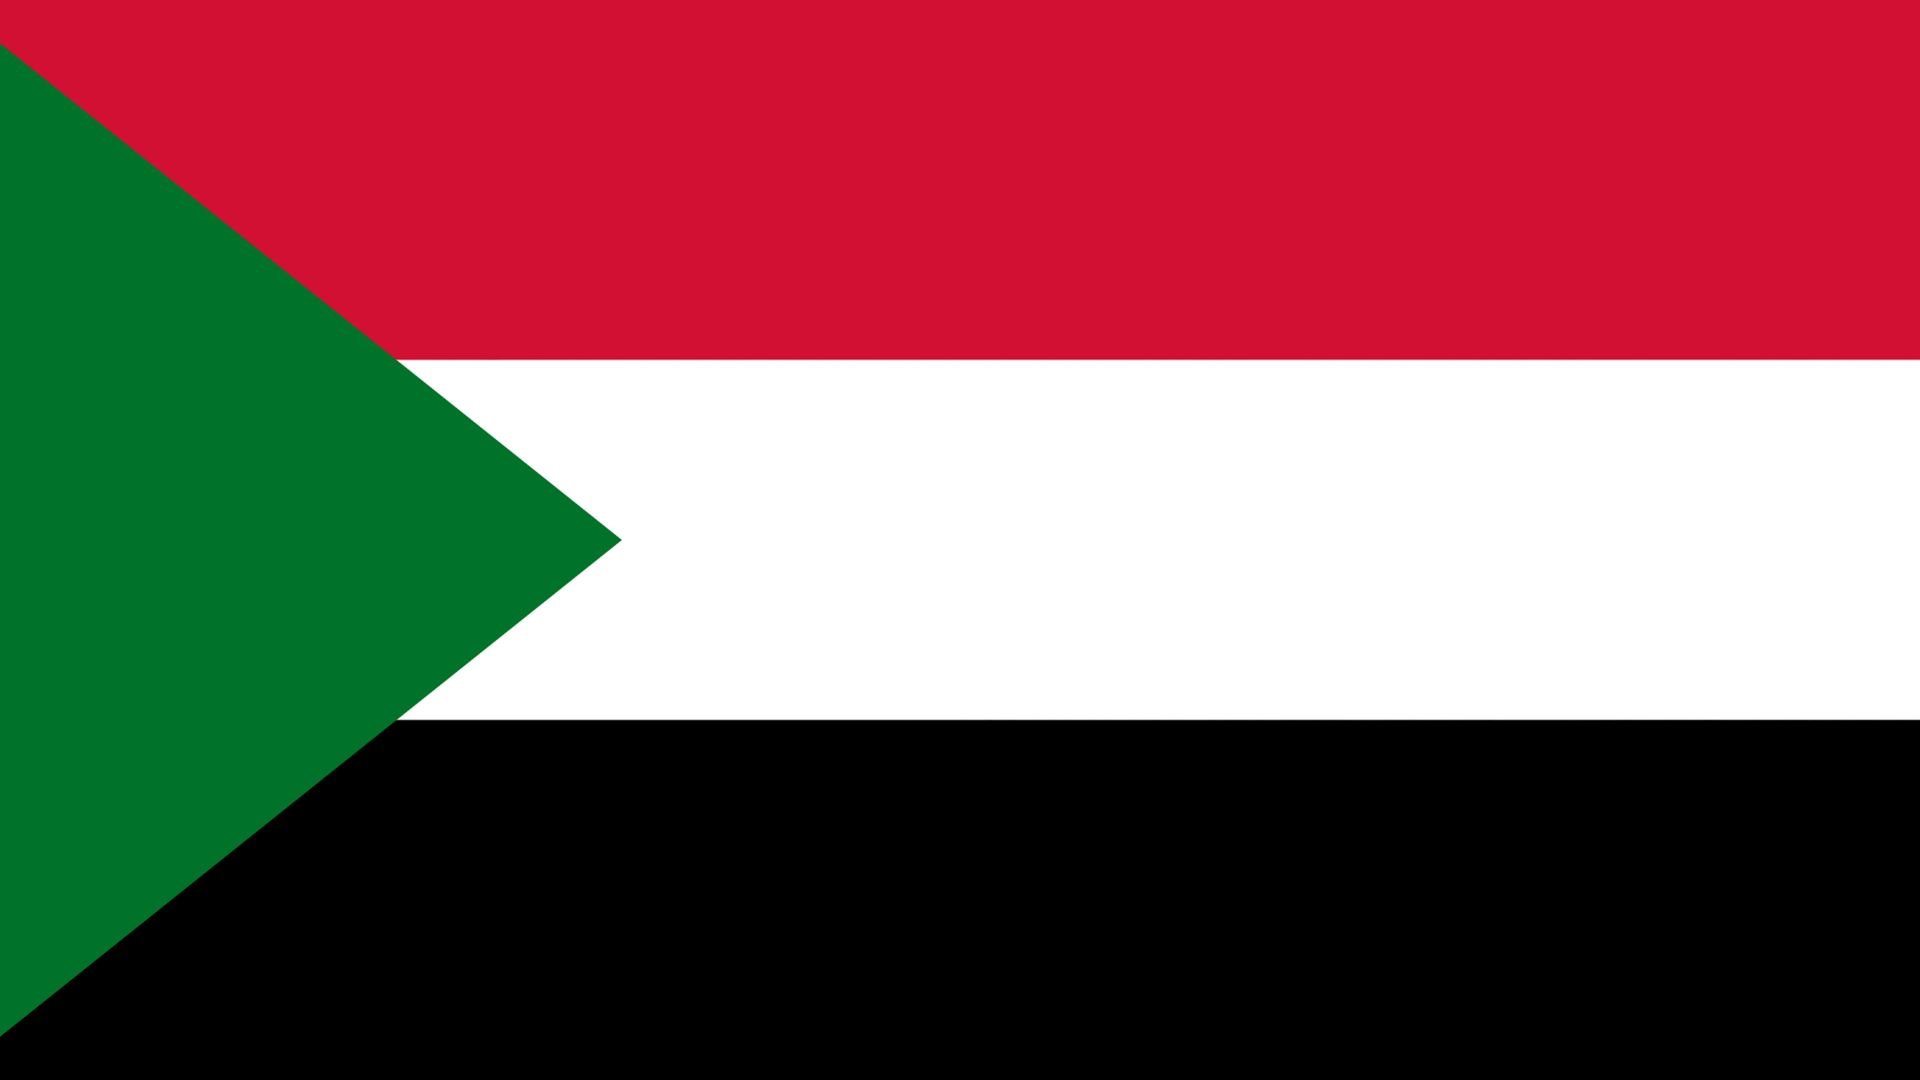 A bandeira do Sudão é composta por três faixas horizontais, nas cores: vermelho, branco e preto e possui um triângulo verde com a base paralela ao eixo.